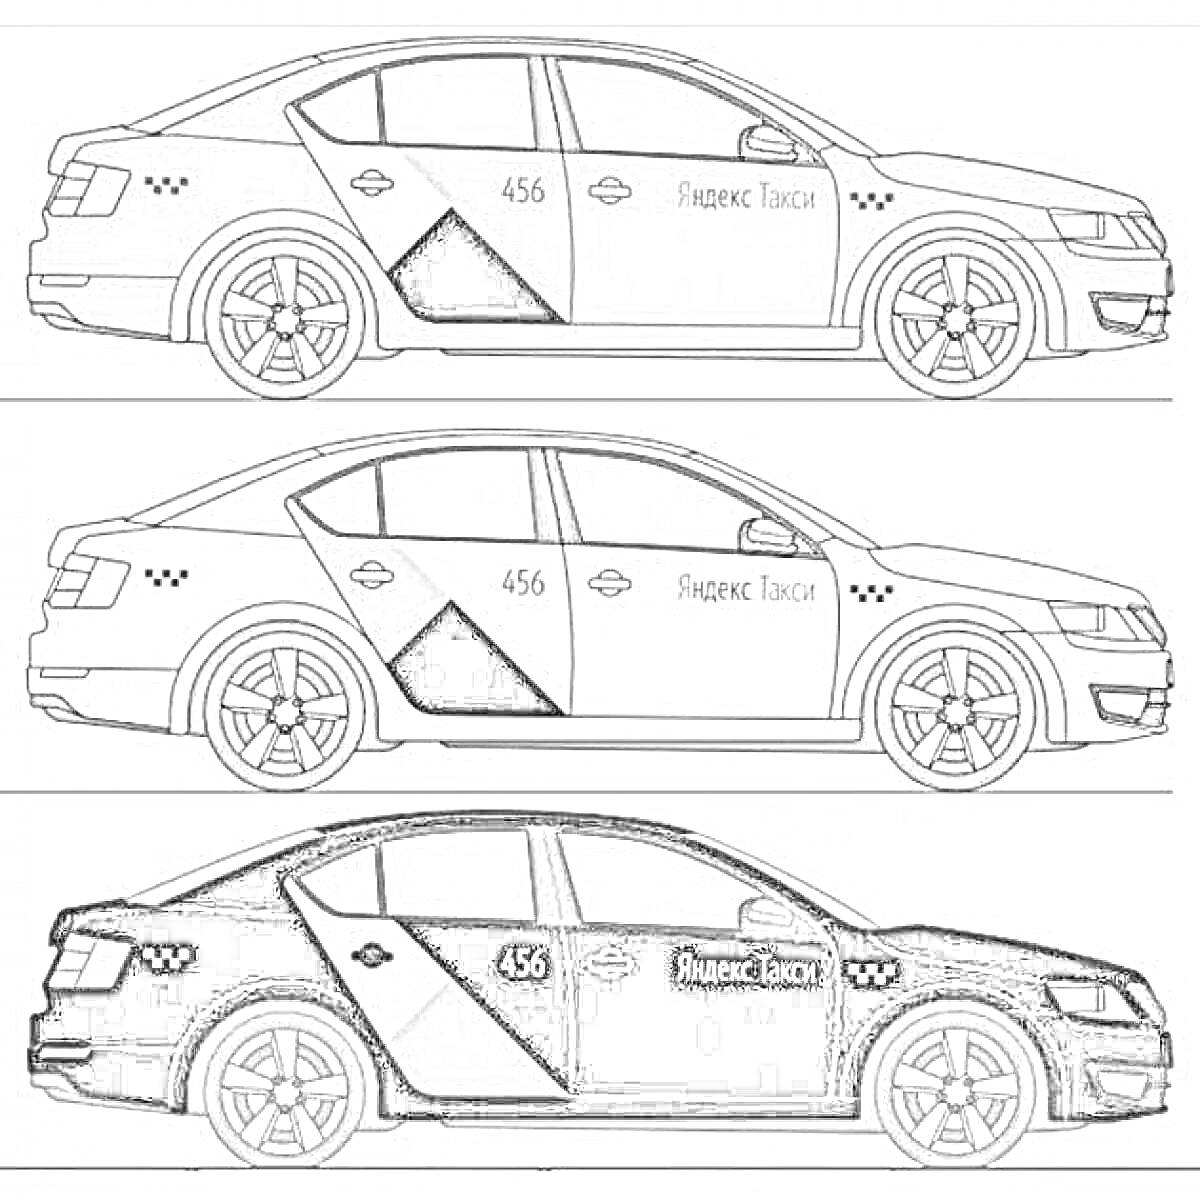 Раскраска Раскраска - три такси Яндекс с различными вариантами окраски